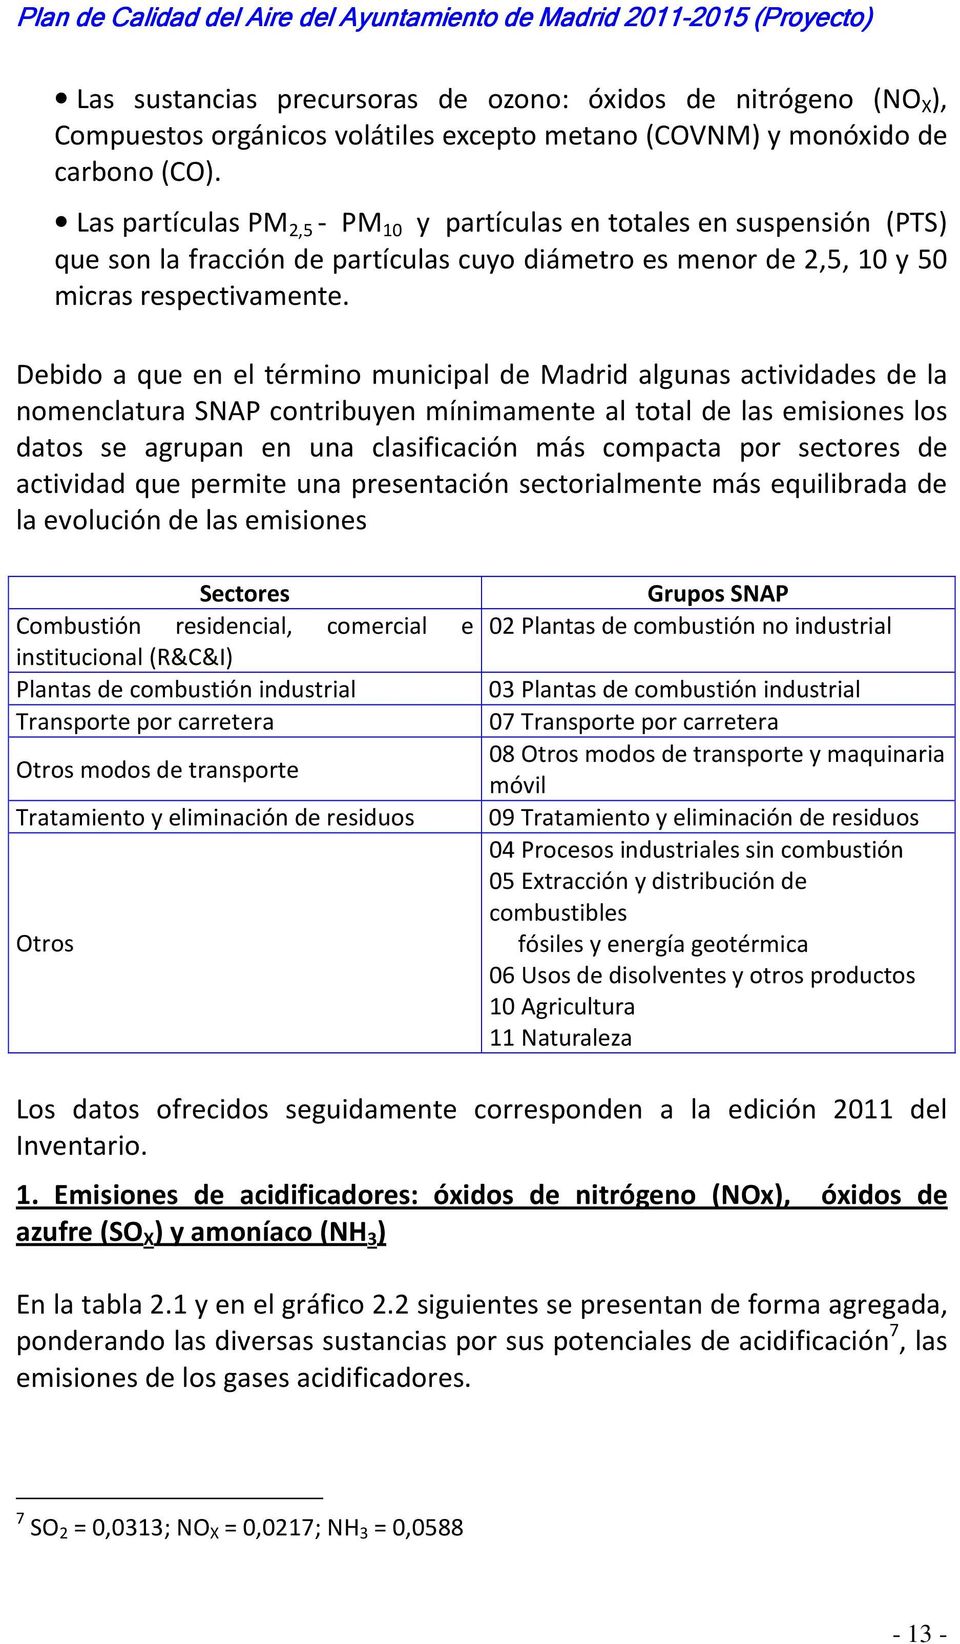 Debido a que en el término municipal de Madrid algunas actividades de la nomenclatura SNAP contribuyen mínimamente al total de las emisiones los datos se agrupan en una clasificación más compacta por